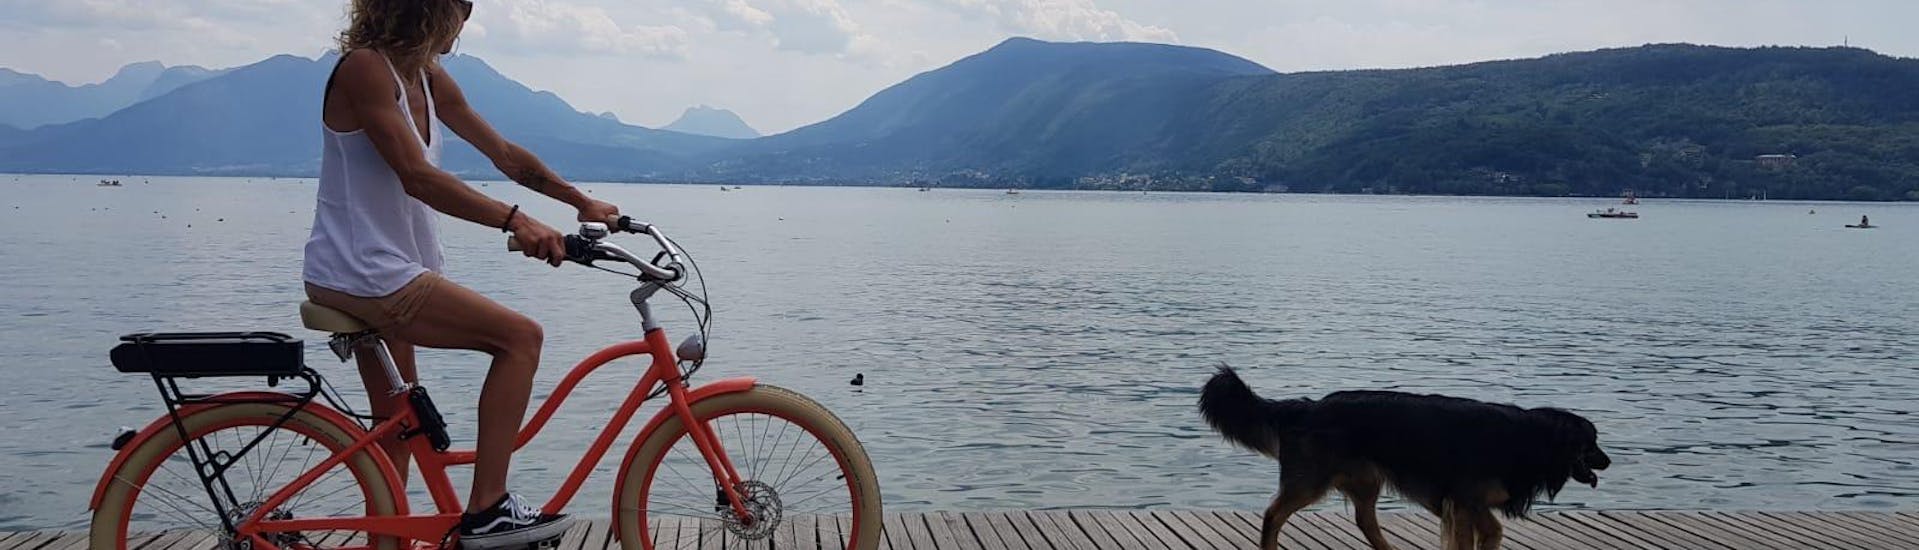 Oranje fiets rijdt langs het water met een zwarte hond voorop door Cayoti.